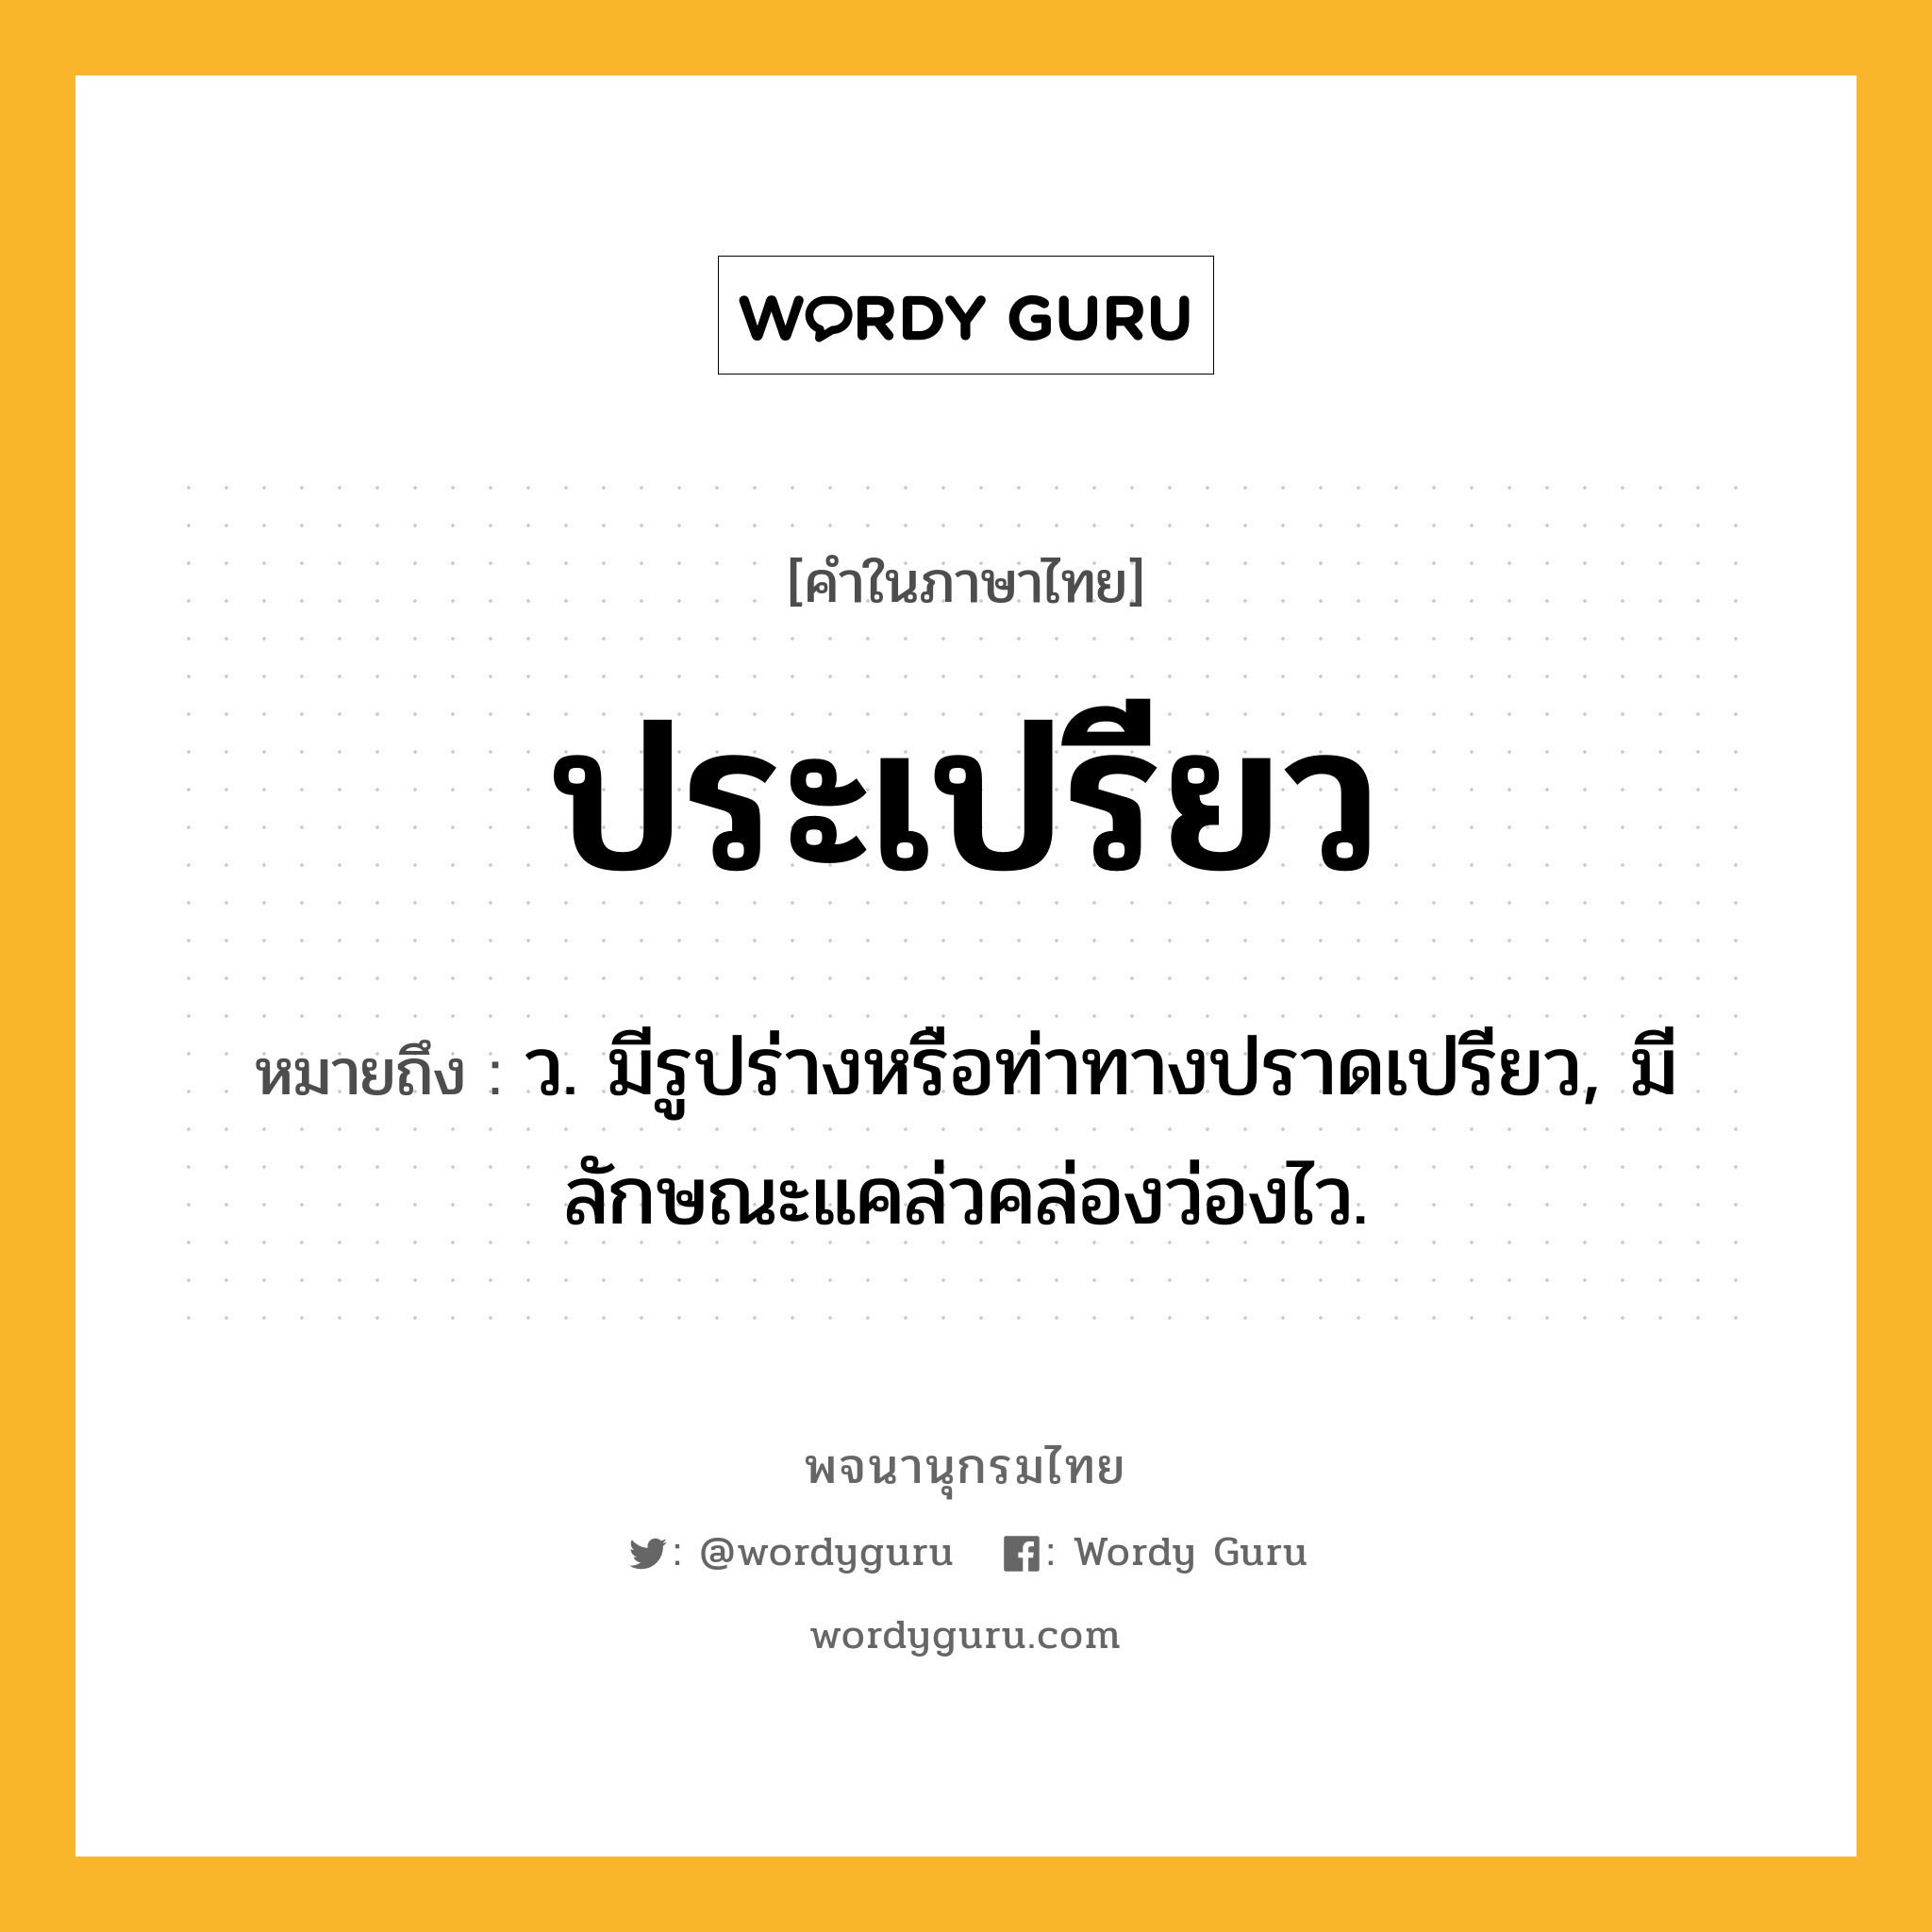 ประเปรียว ความหมาย หมายถึงอะไร?, คำในภาษาไทย ประเปรียว หมายถึง ว. มีรูปร่างหรือท่าทางปราดเปรียว, มีลักษณะแคล่วคล่องว่องไว.